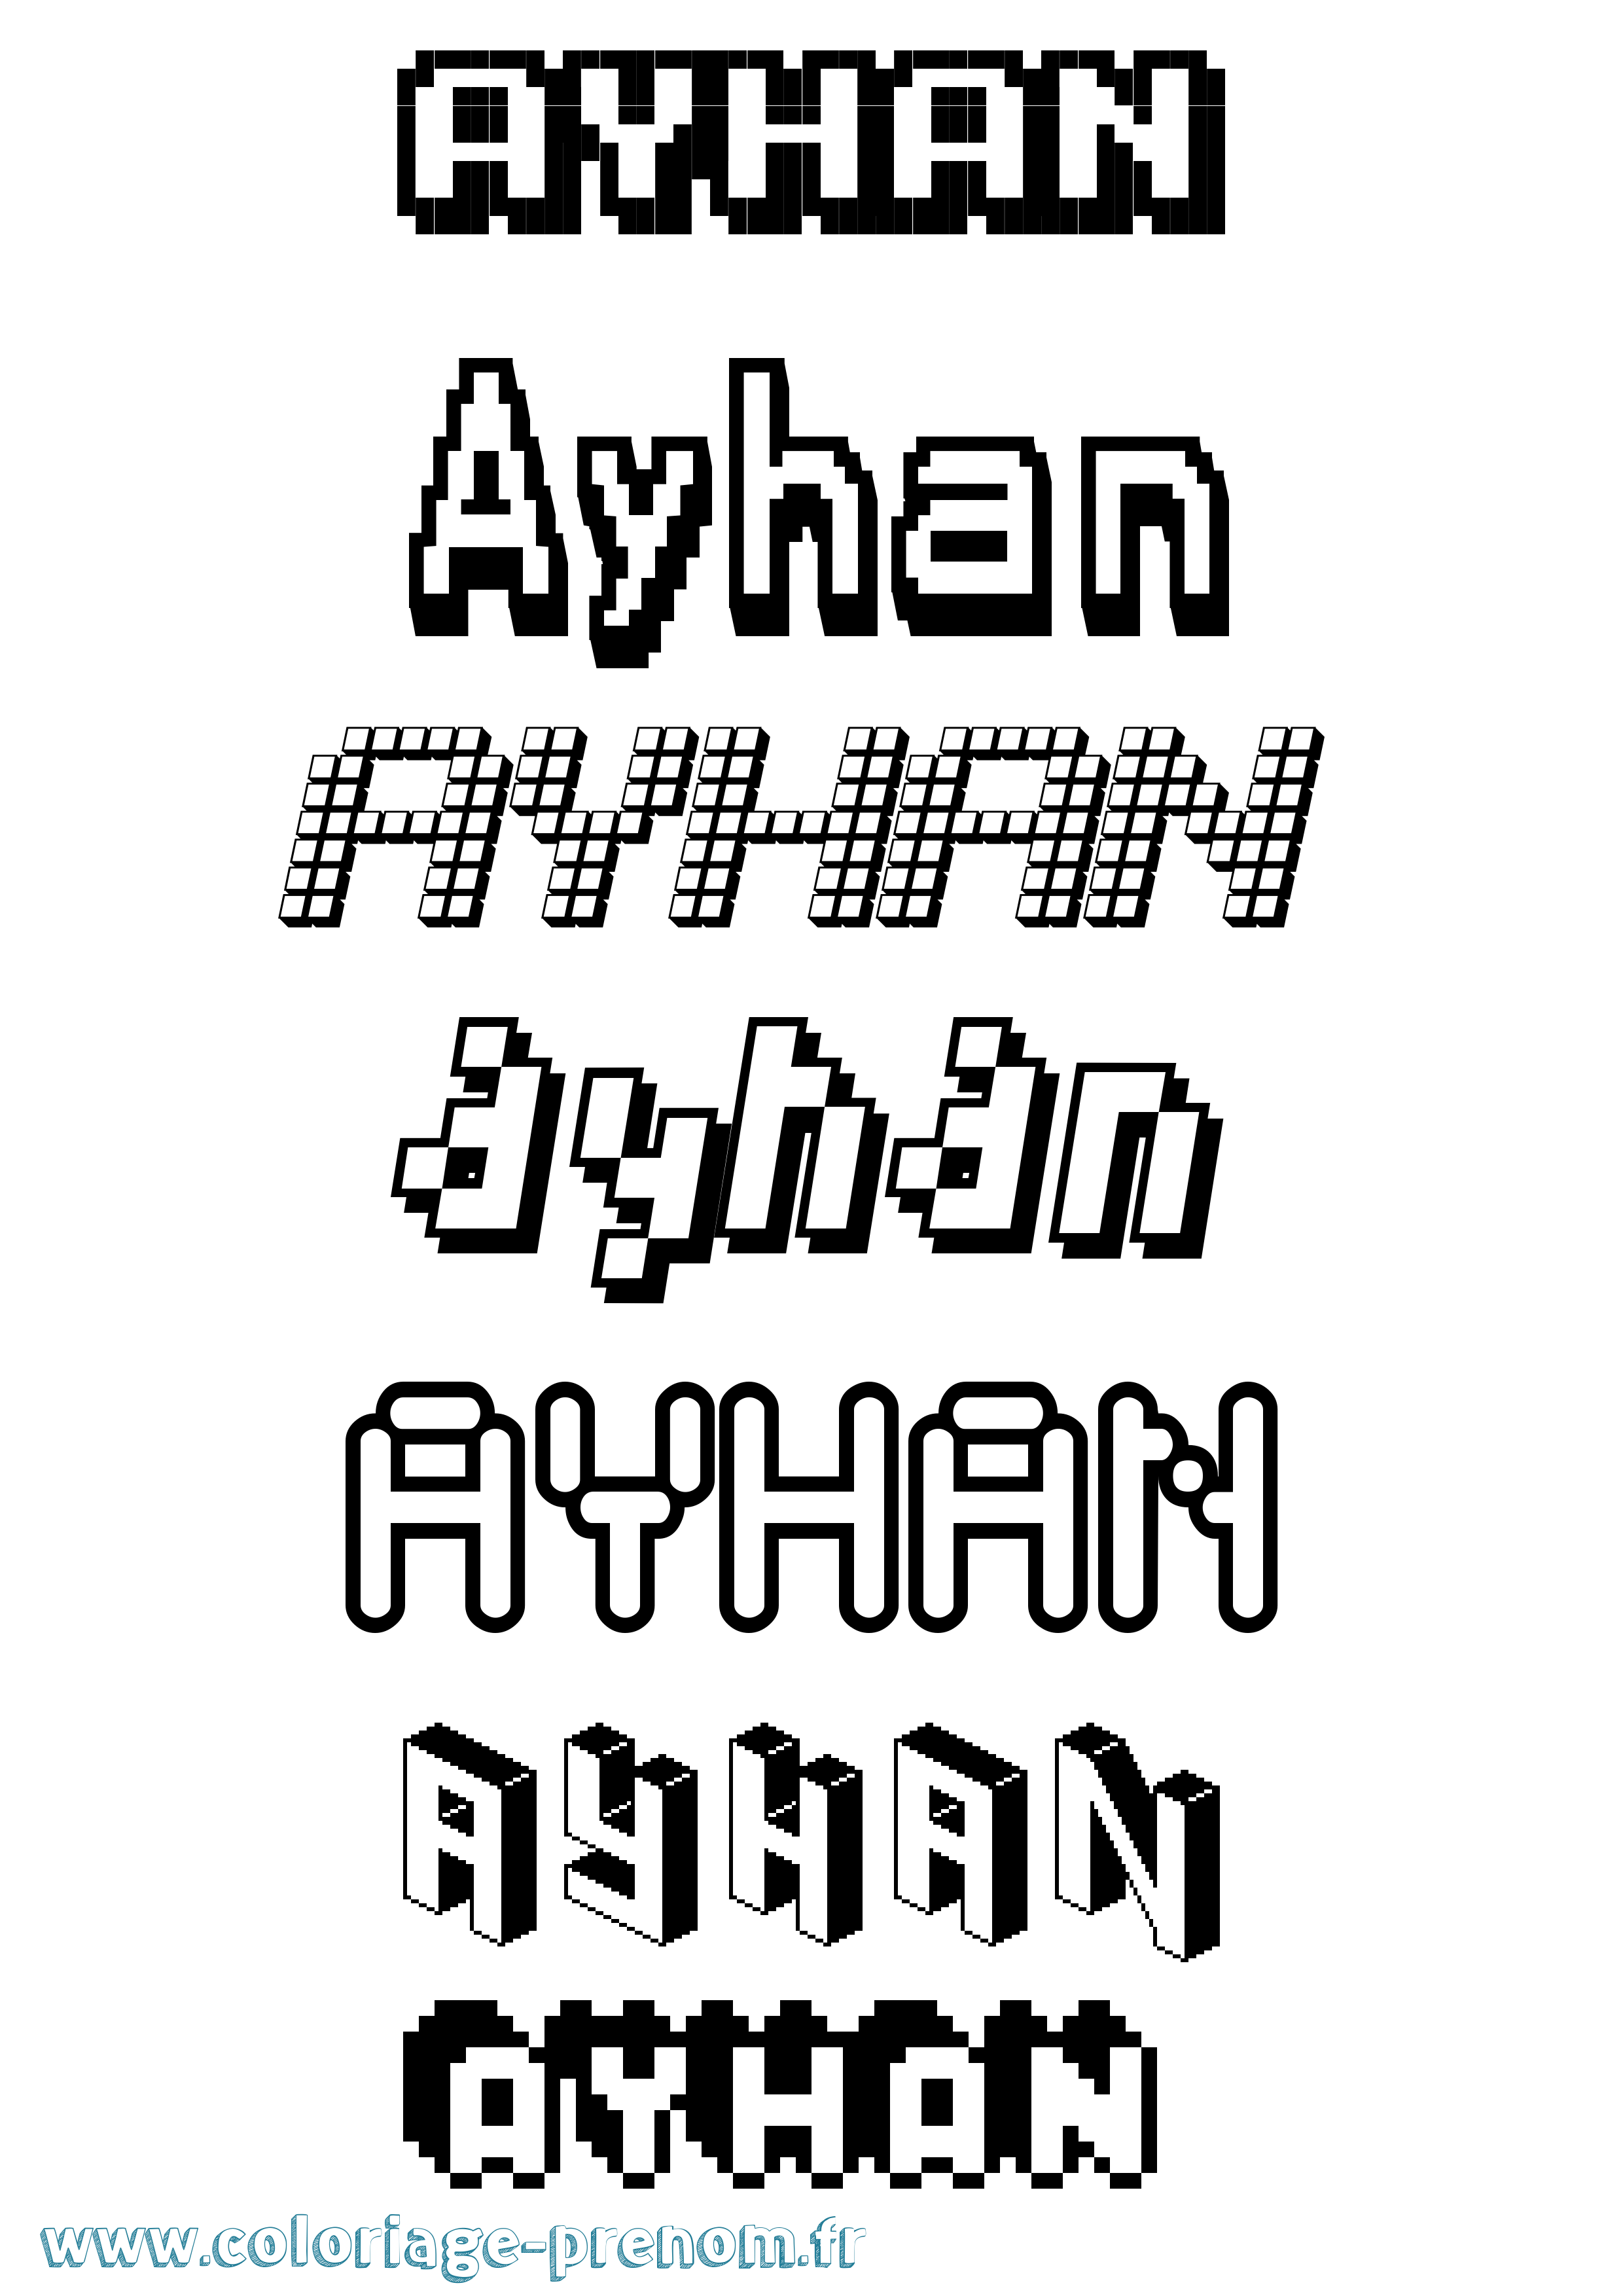 Coloriage prénom Ayhan Pixel